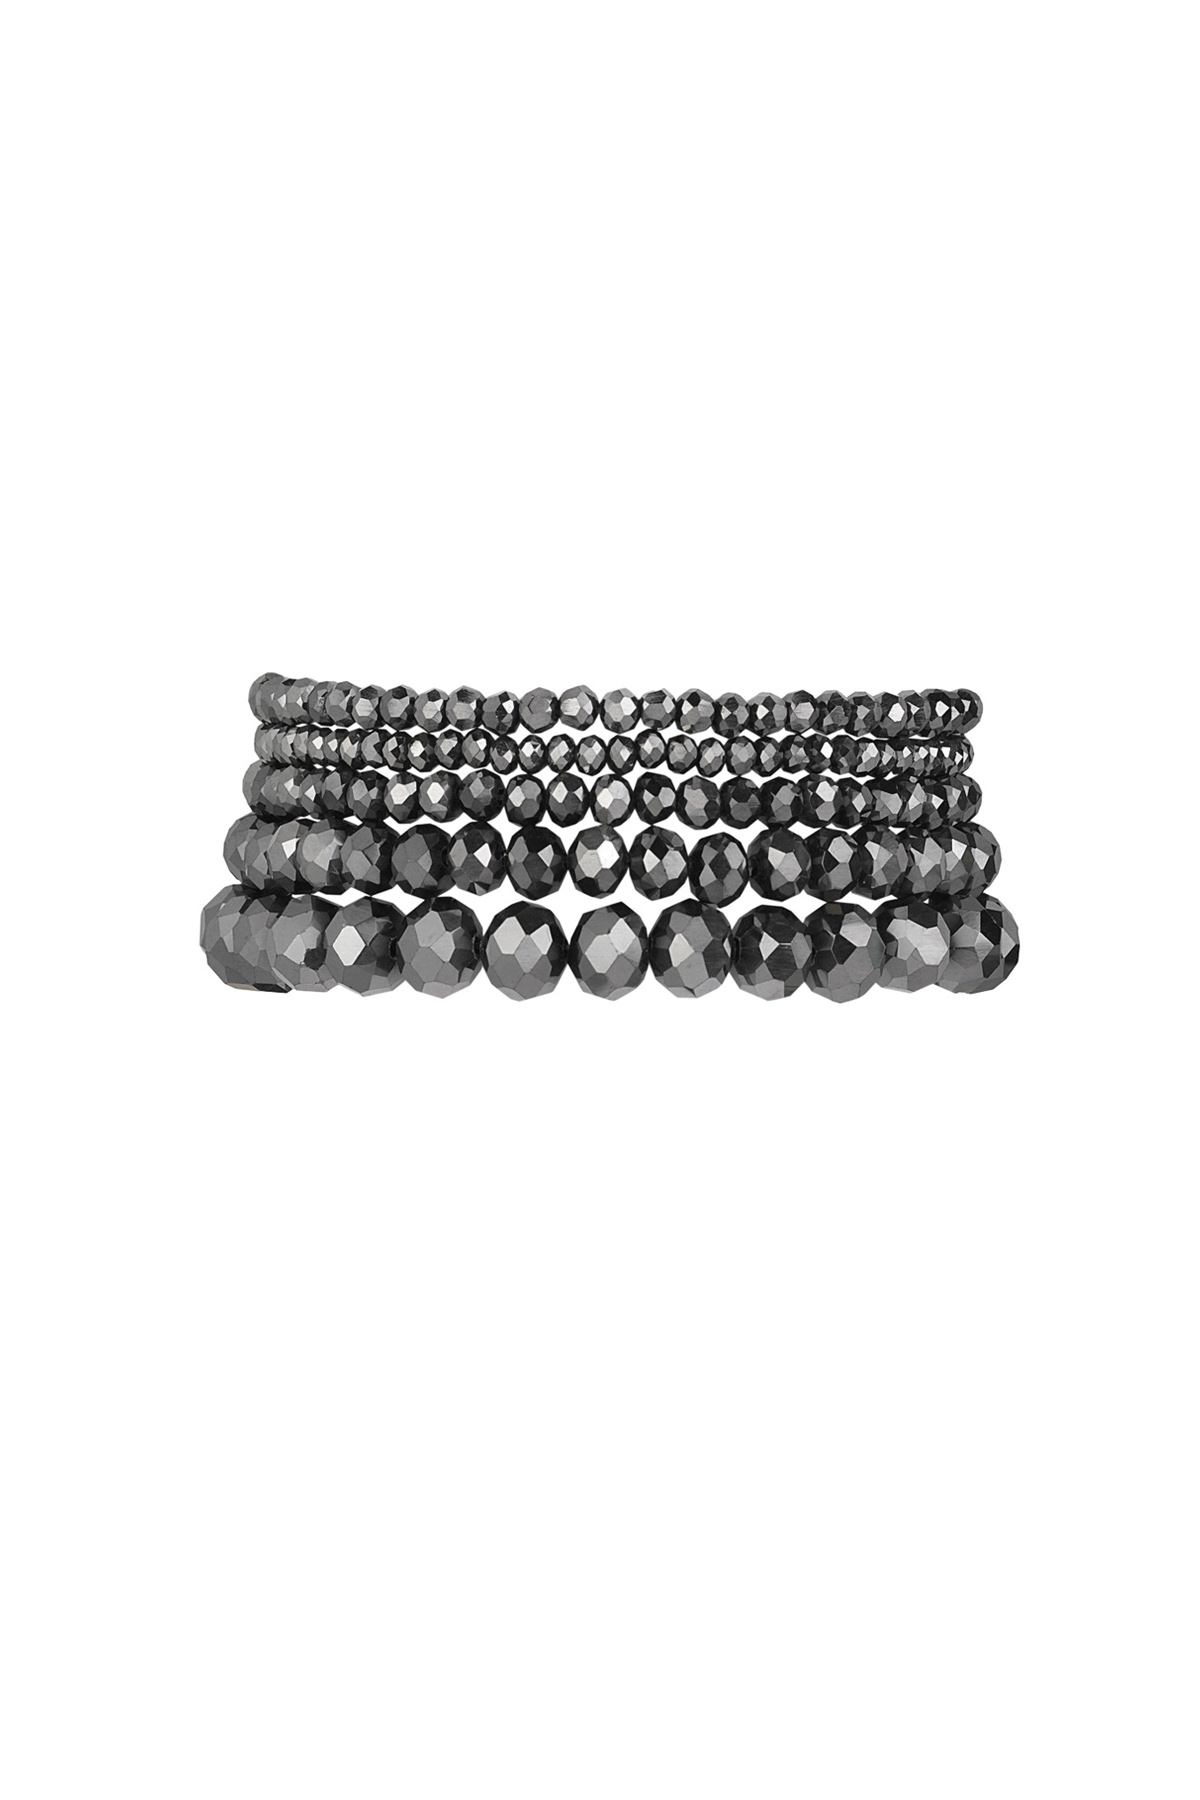 Set de 5 pulseras de cristal gris - gris oscuro h5 